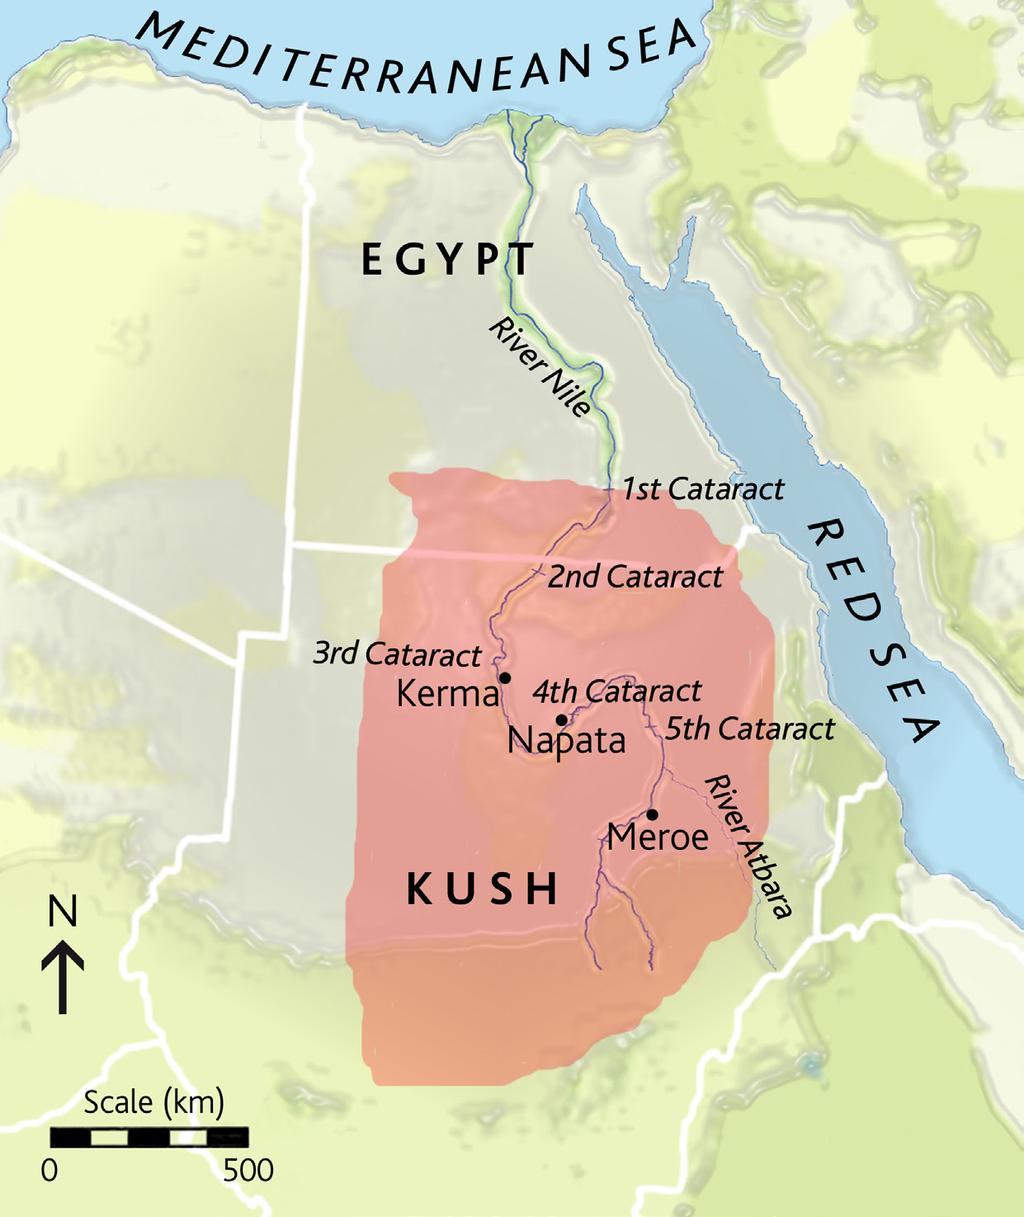 KINGDOM OF KUSH Millennium BC 3rd 1 Kerma 2500 1500 2 Egyptian New Kingdom 1550 1069 3 2nd Kingdom of Kush, Napatan period 9th c. 4th c. 4 Meroitic period 4th c. BC 4th c.